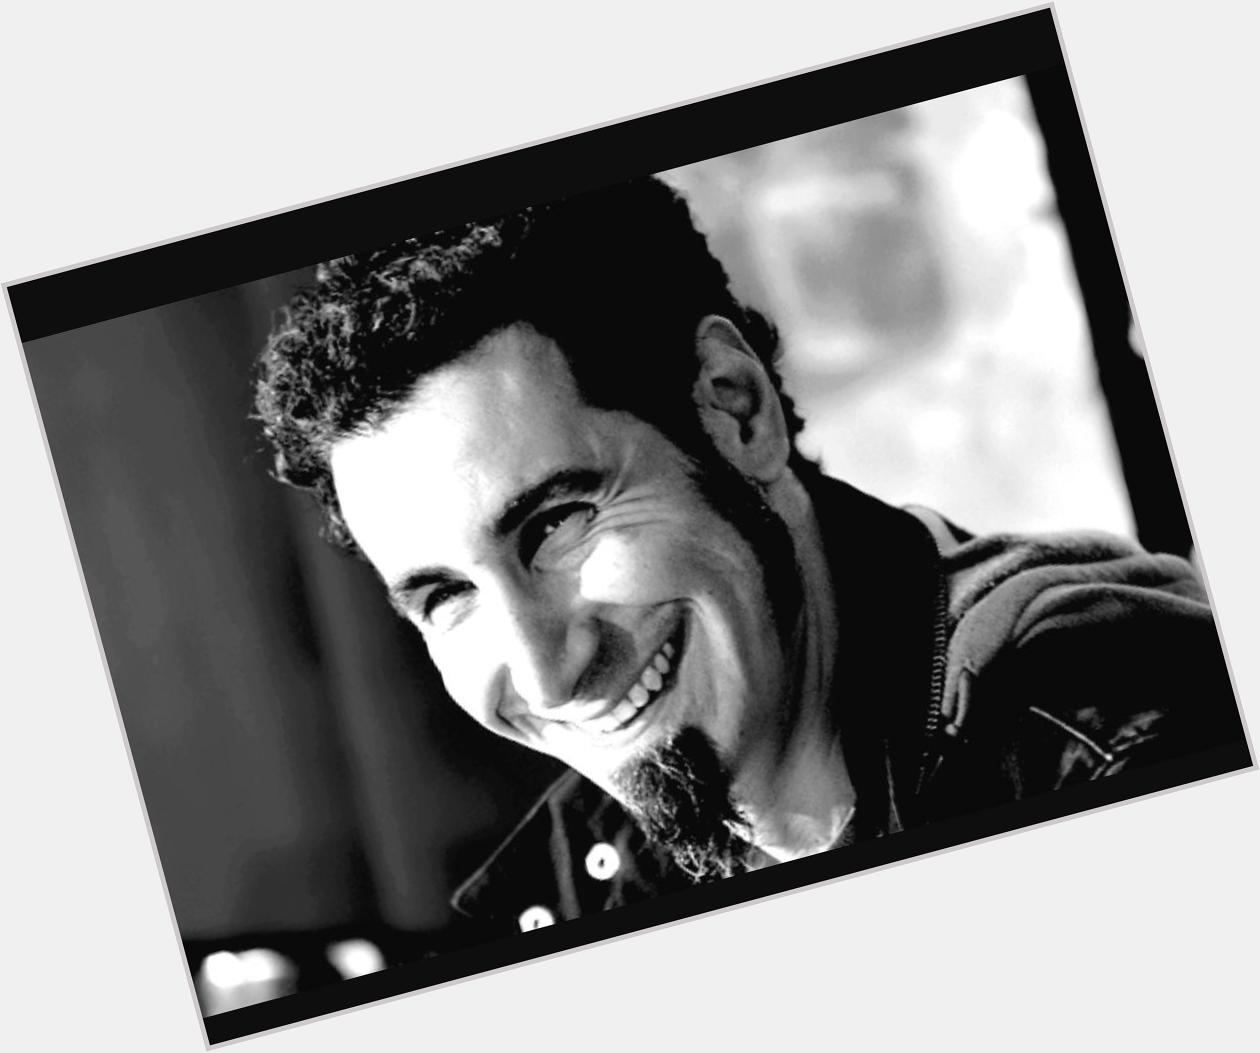 Hoje é aniversário de um dos cantores mais fodas de rock na minha opinião   Happy Birthday Serj Tankian  